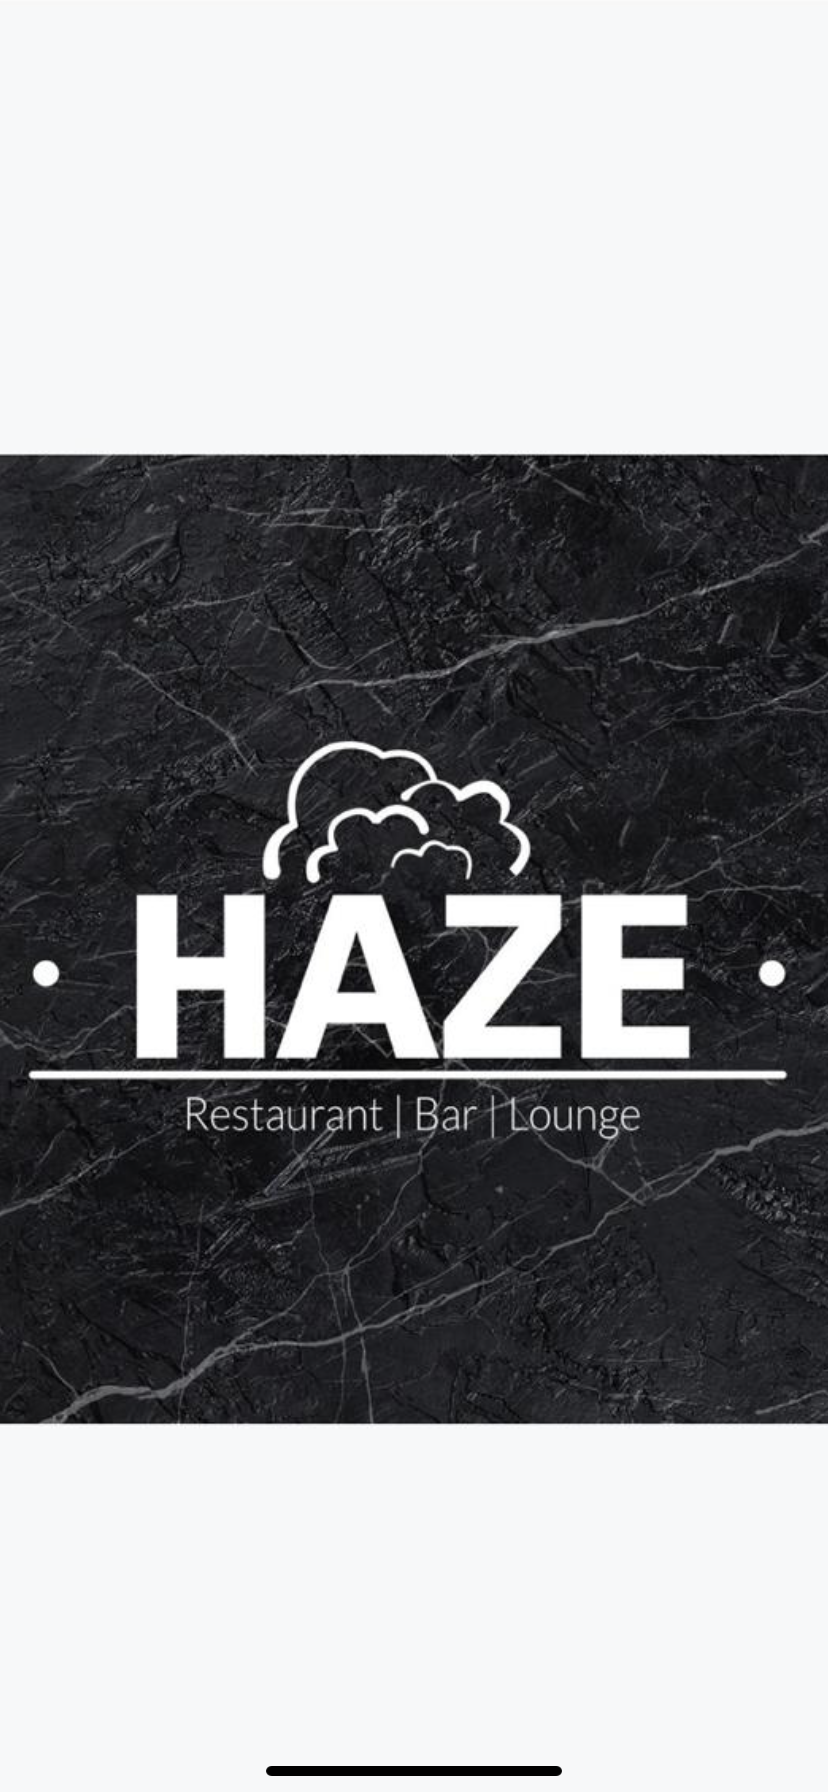 Haze Lounge